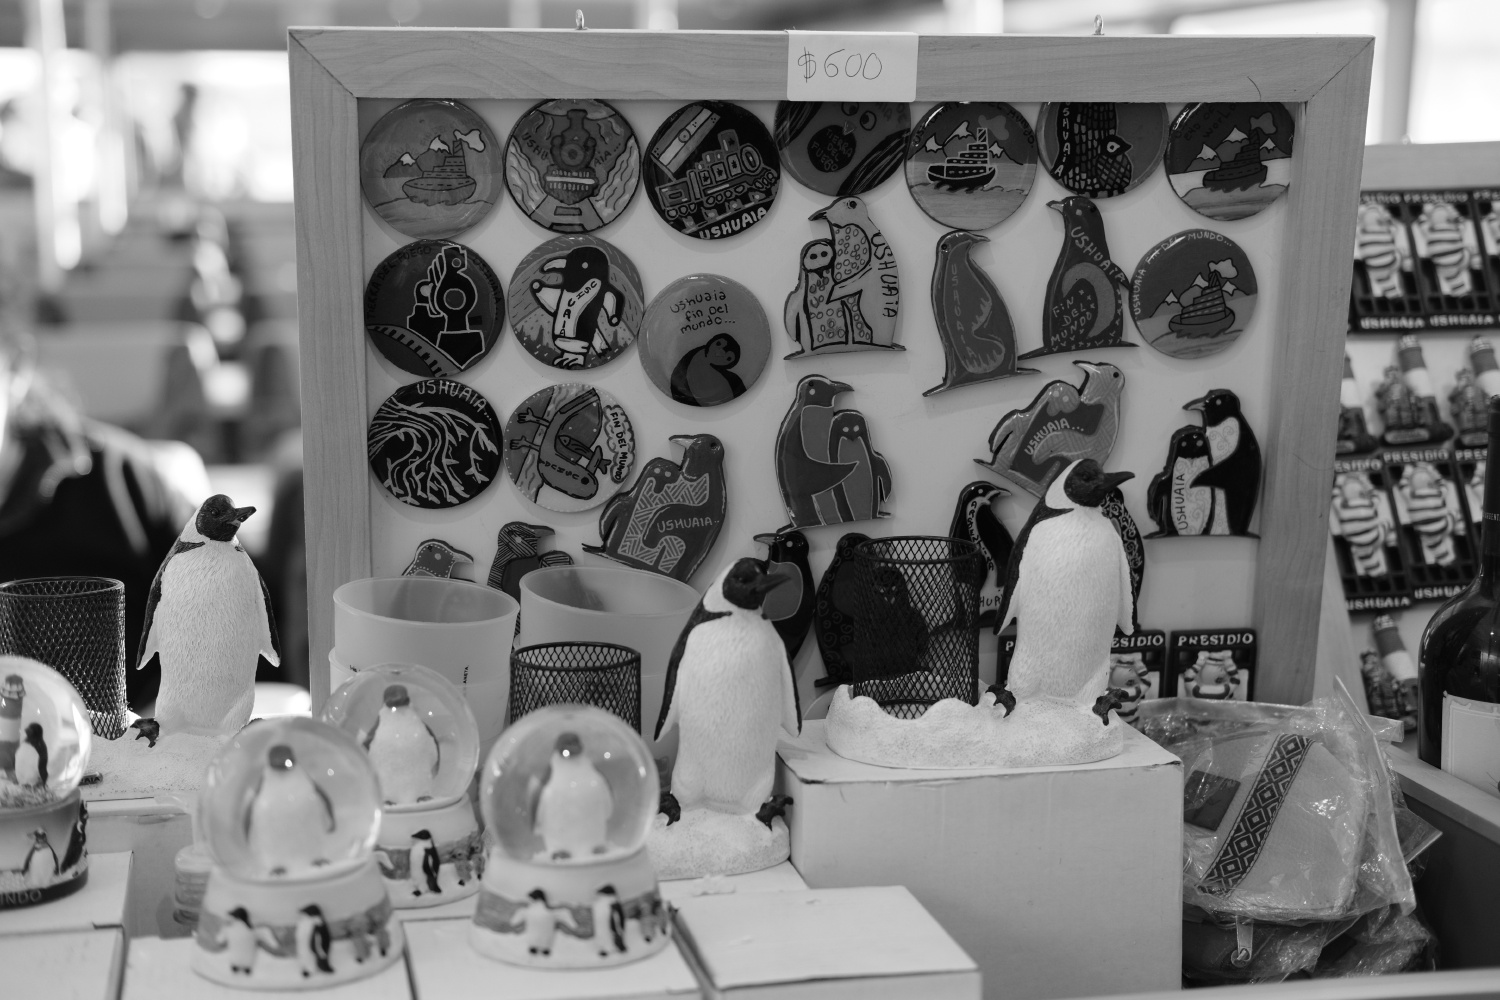 Penguins galore for souvenirs